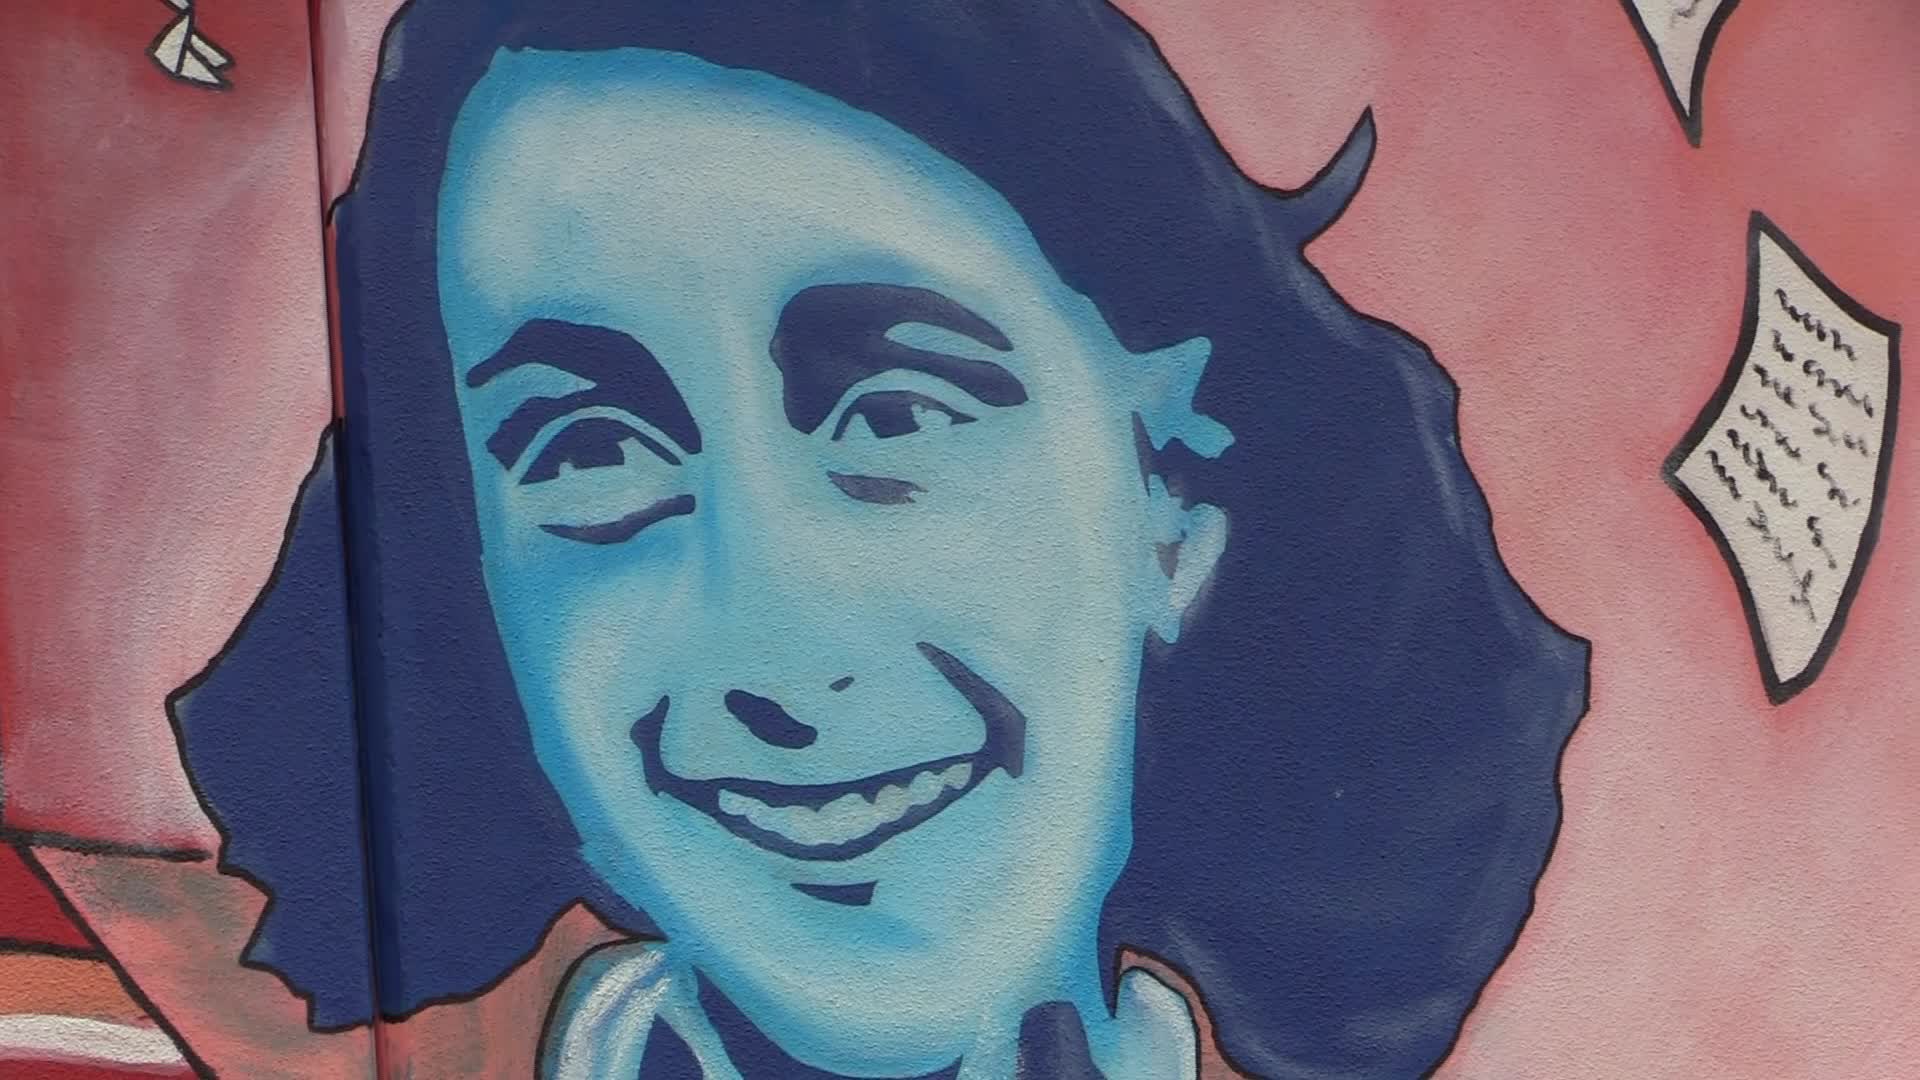 Inaugurato murale ad Anna Frank dopo l'aggressione antisemita